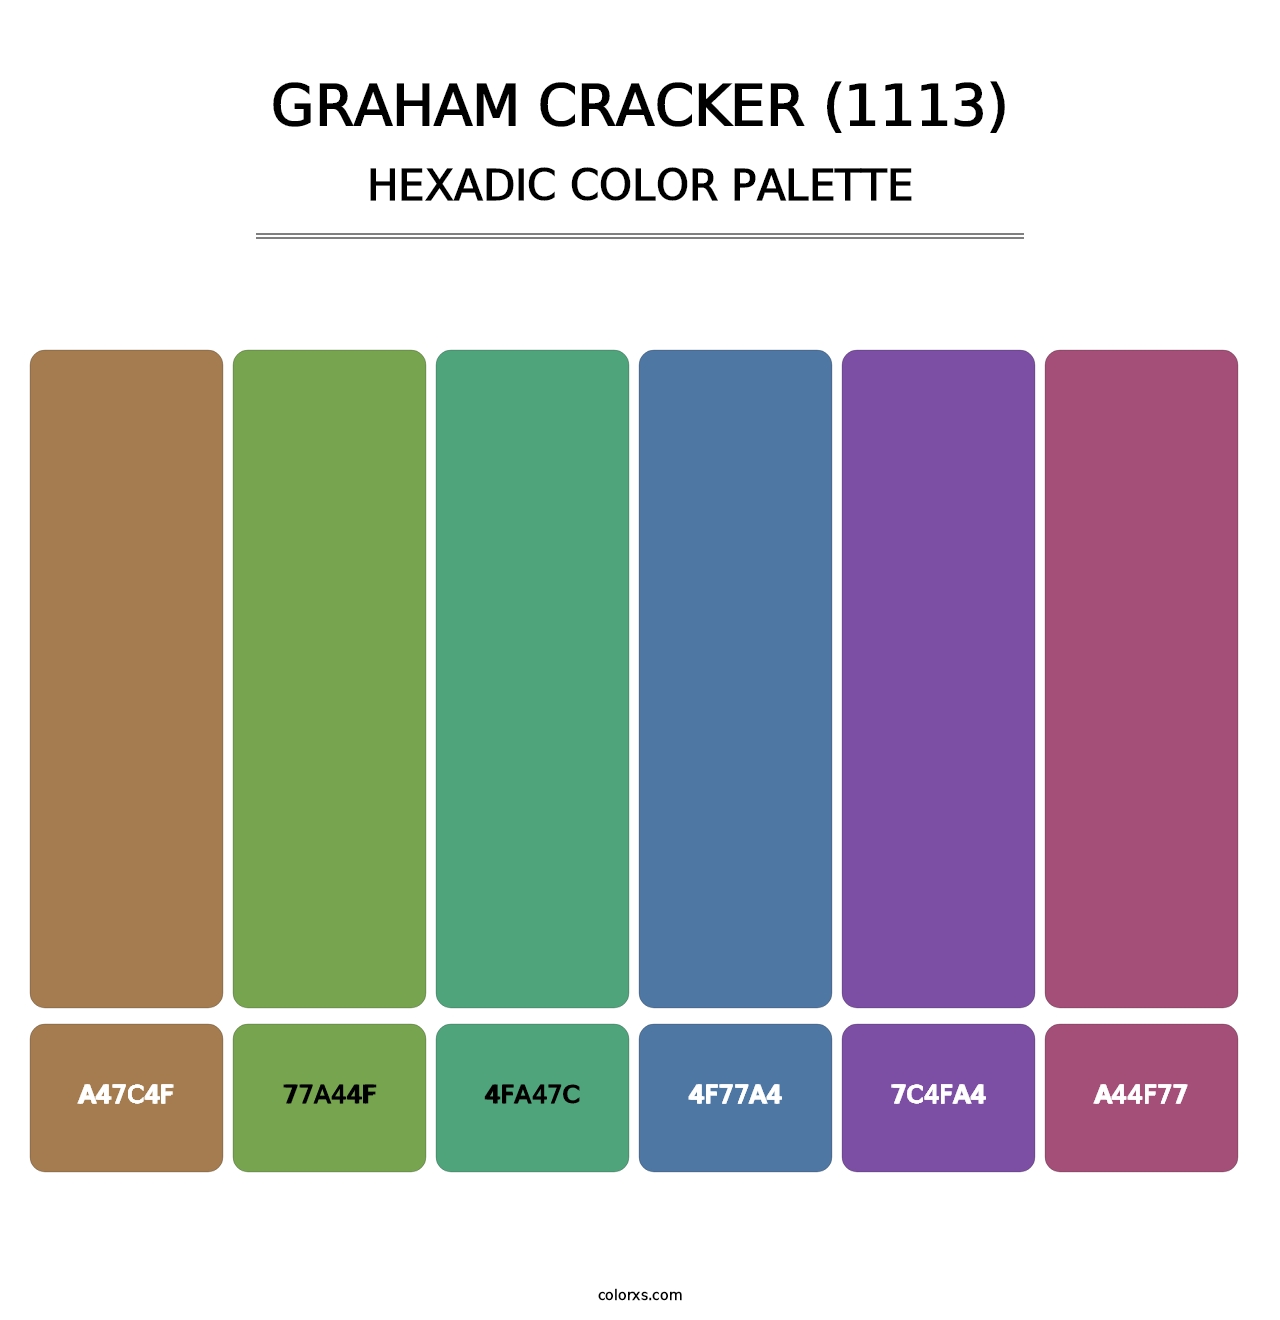 Graham Cracker (1113) - Hexadic Color Palette